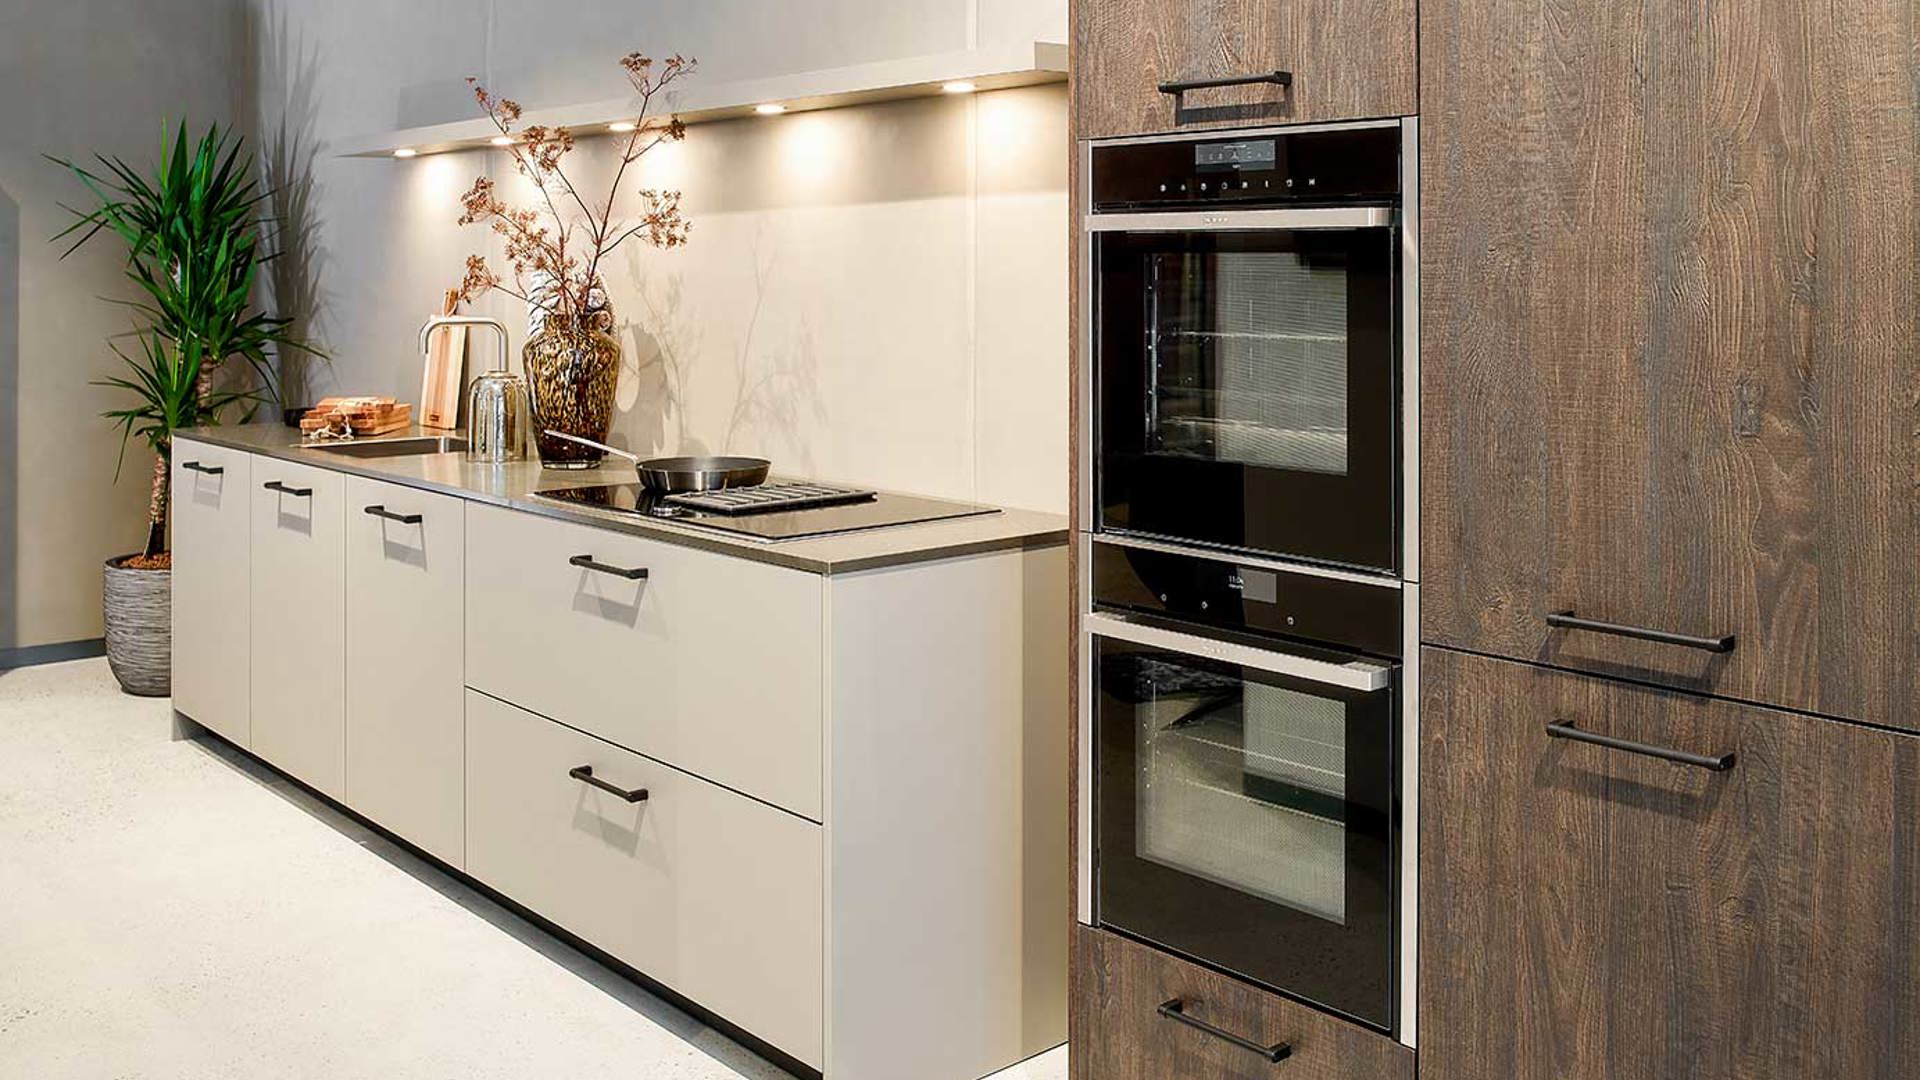 Moderne rechte keuken met houten kastenwand, compleet uitgerust met NEFF apparatuur